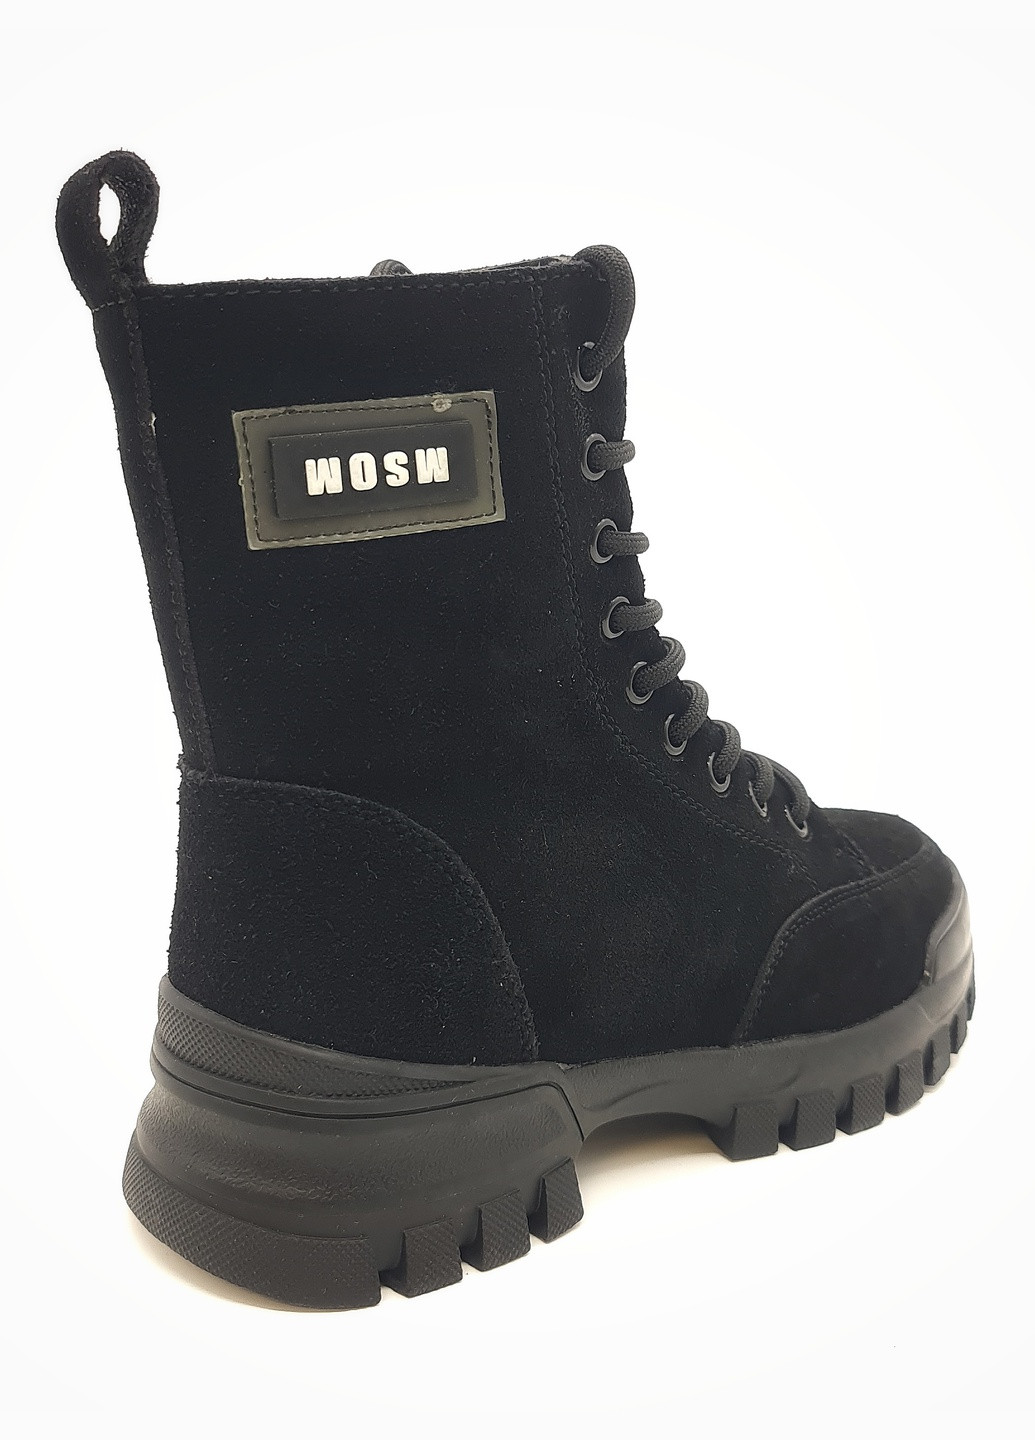 Осенние женские ботинки зимние черные замшевые ii-11-19 23 см(р) It is